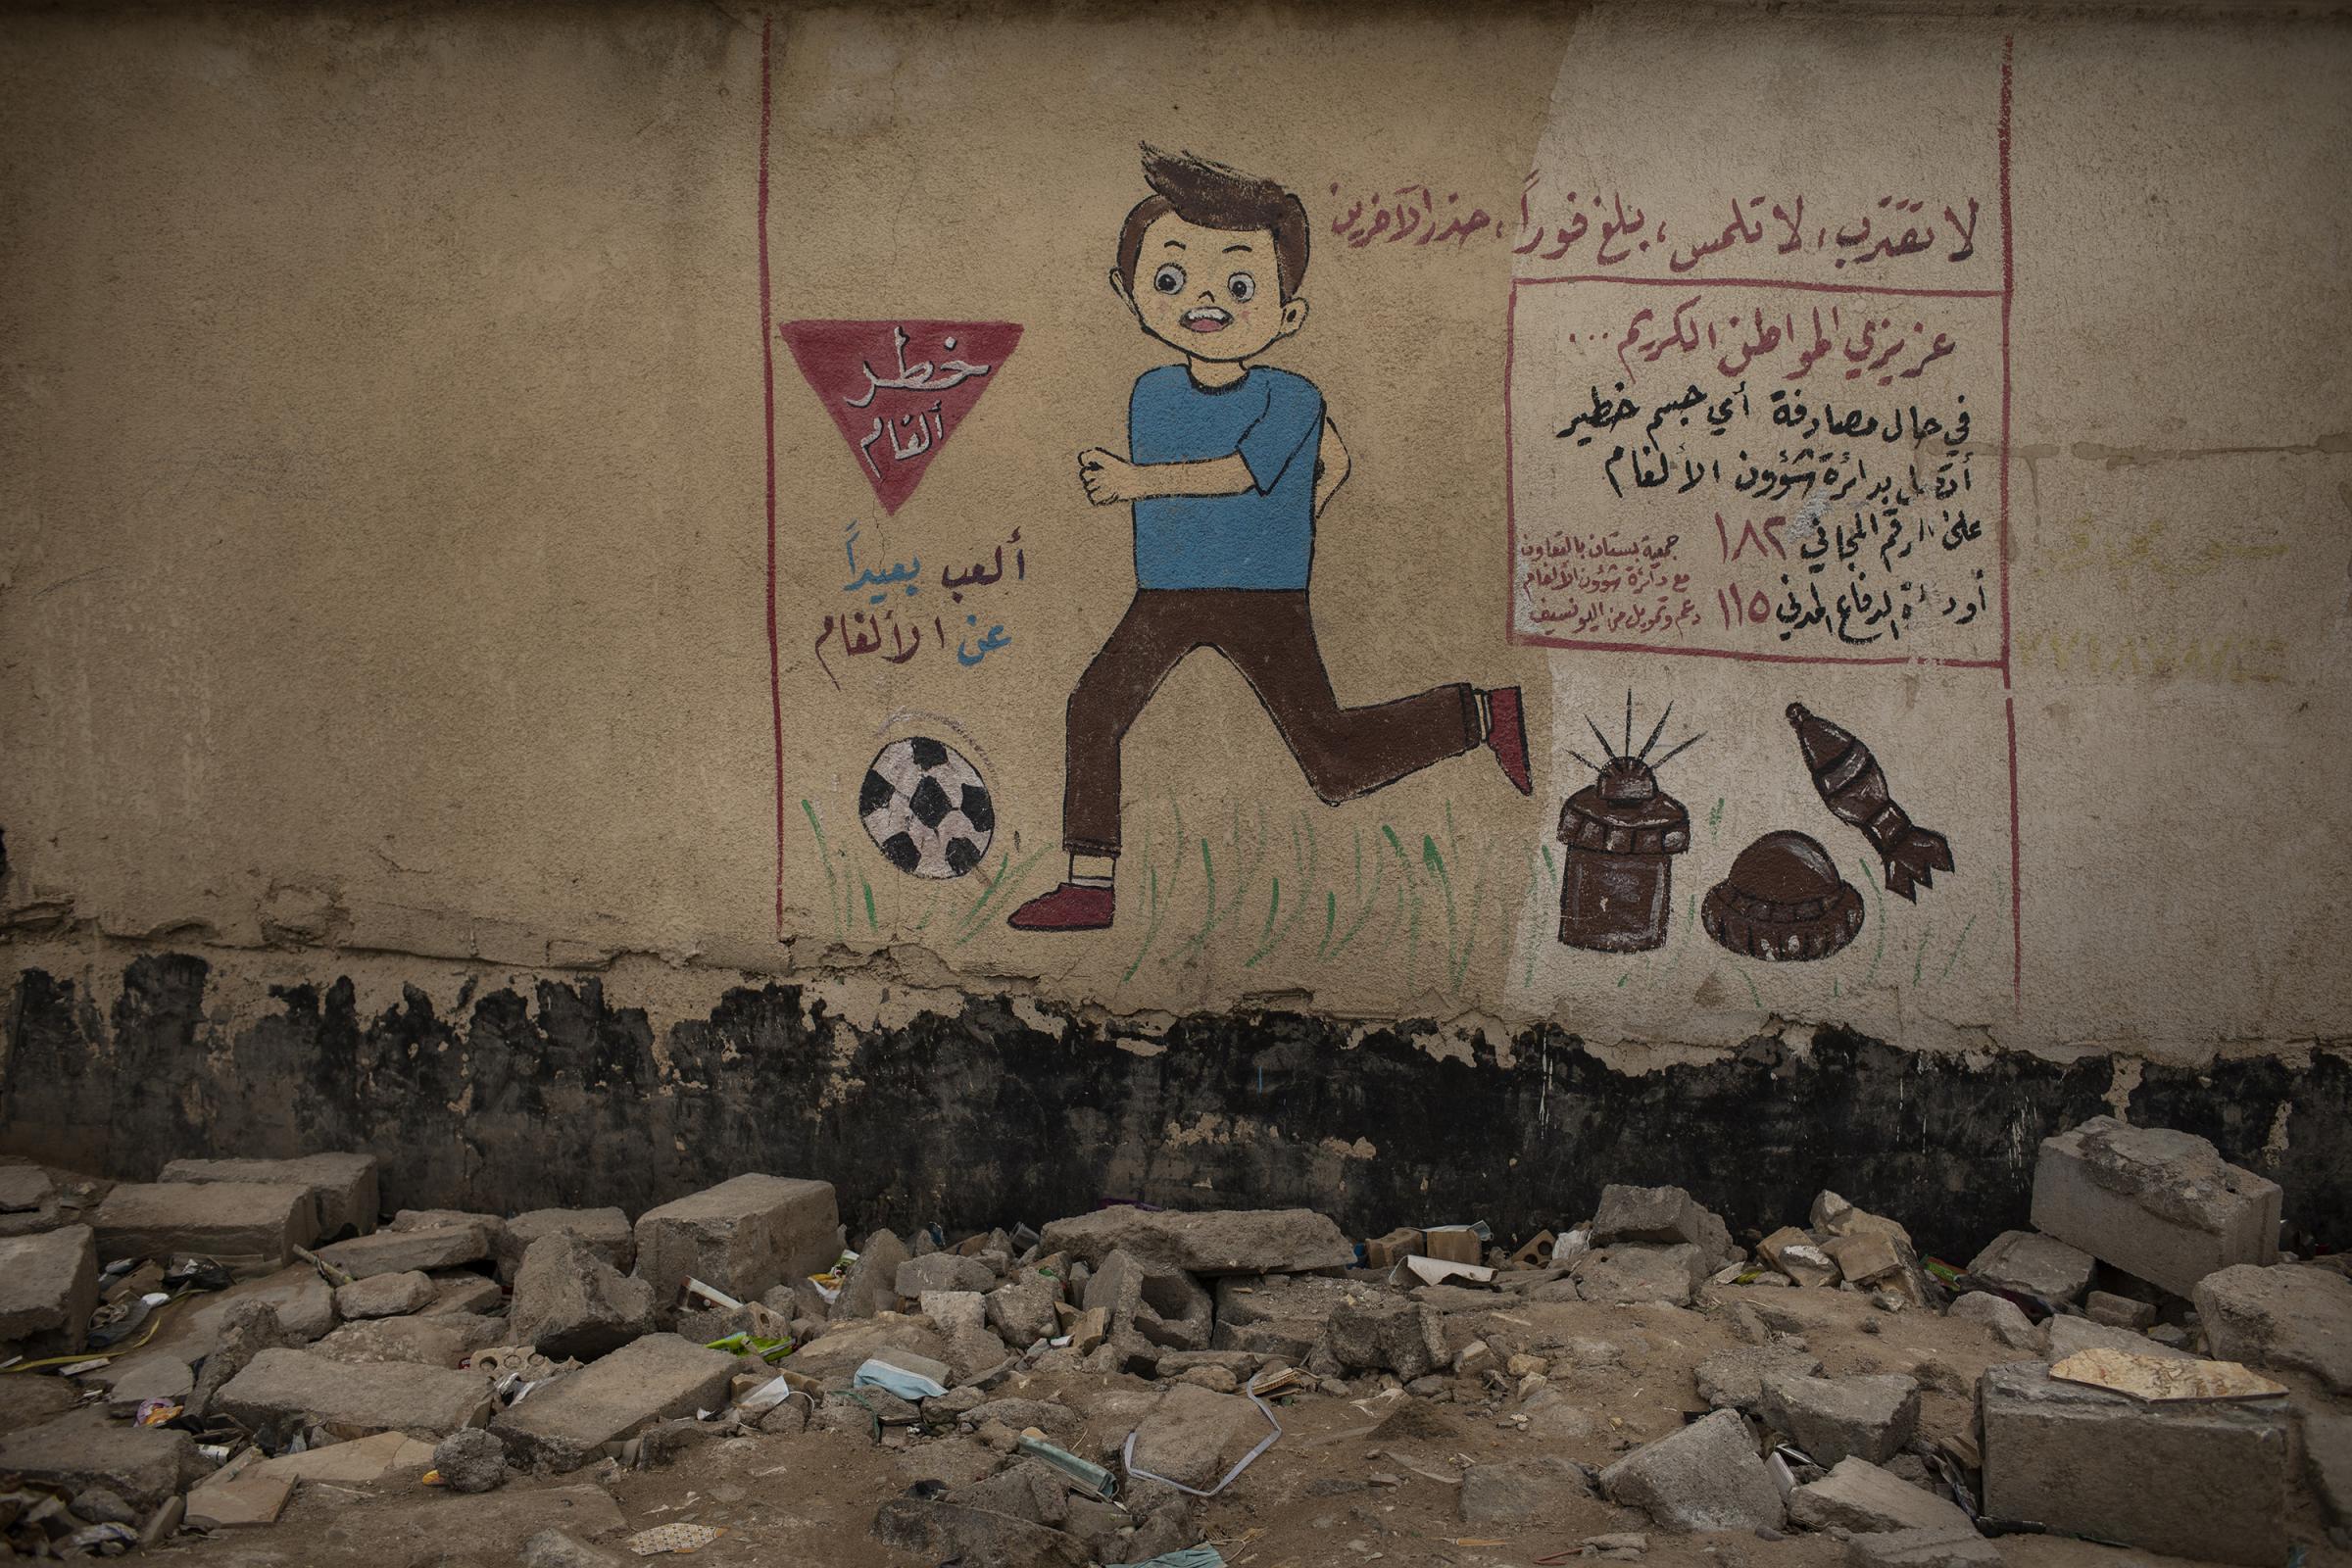 EWIPA Iraq - On 3 March 2022. Basra, Iraq. A mural displayed on the...